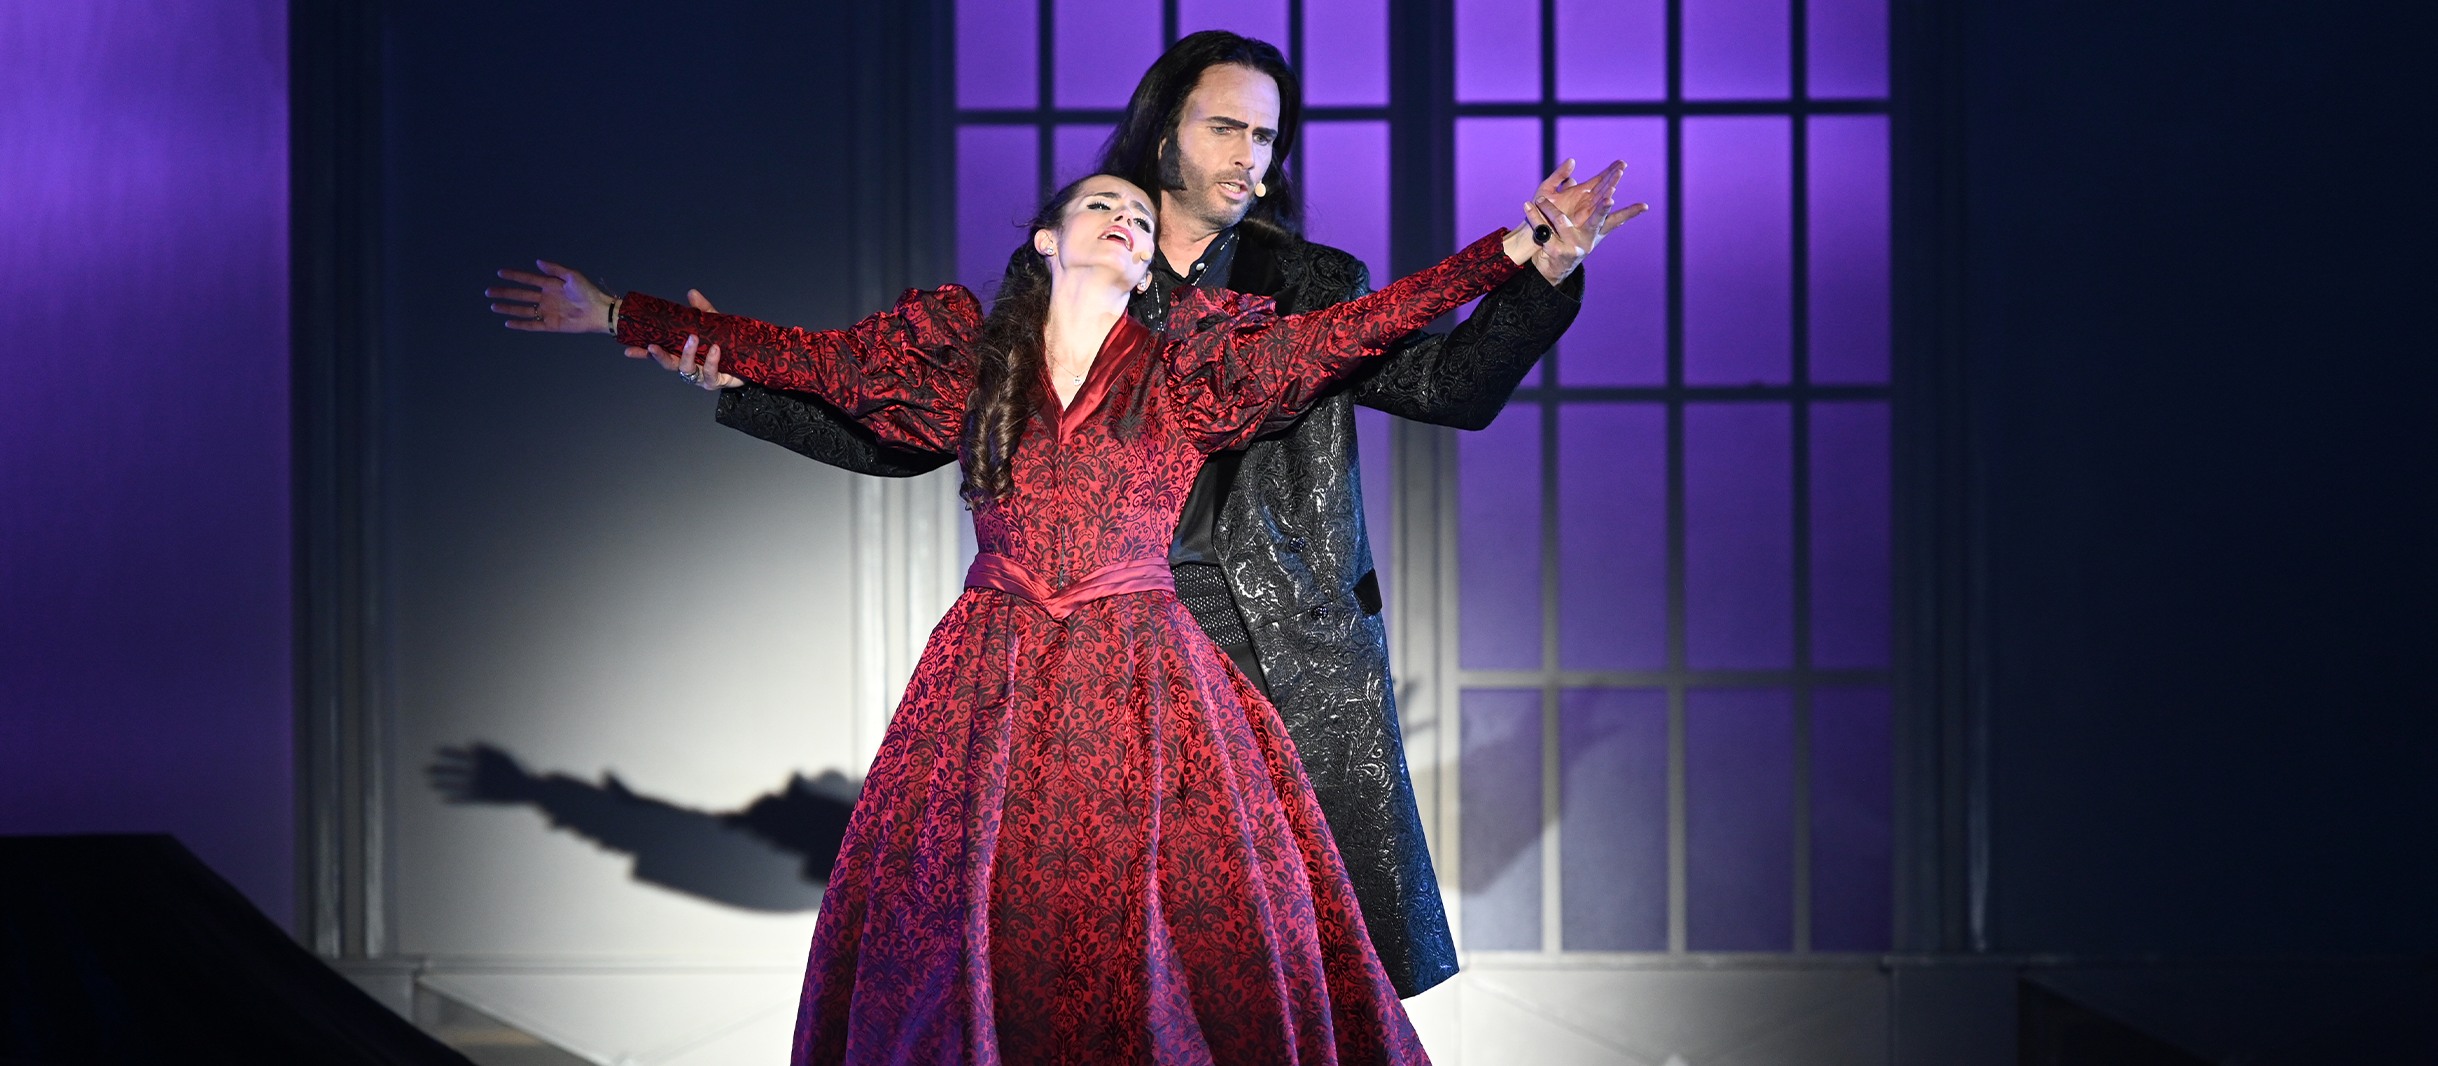 Thomas Borchert in der Rolle des Vampirs Dracula im gleichnamigen Musical verführt Mina, die in einem roten Kleid vor ihm steht